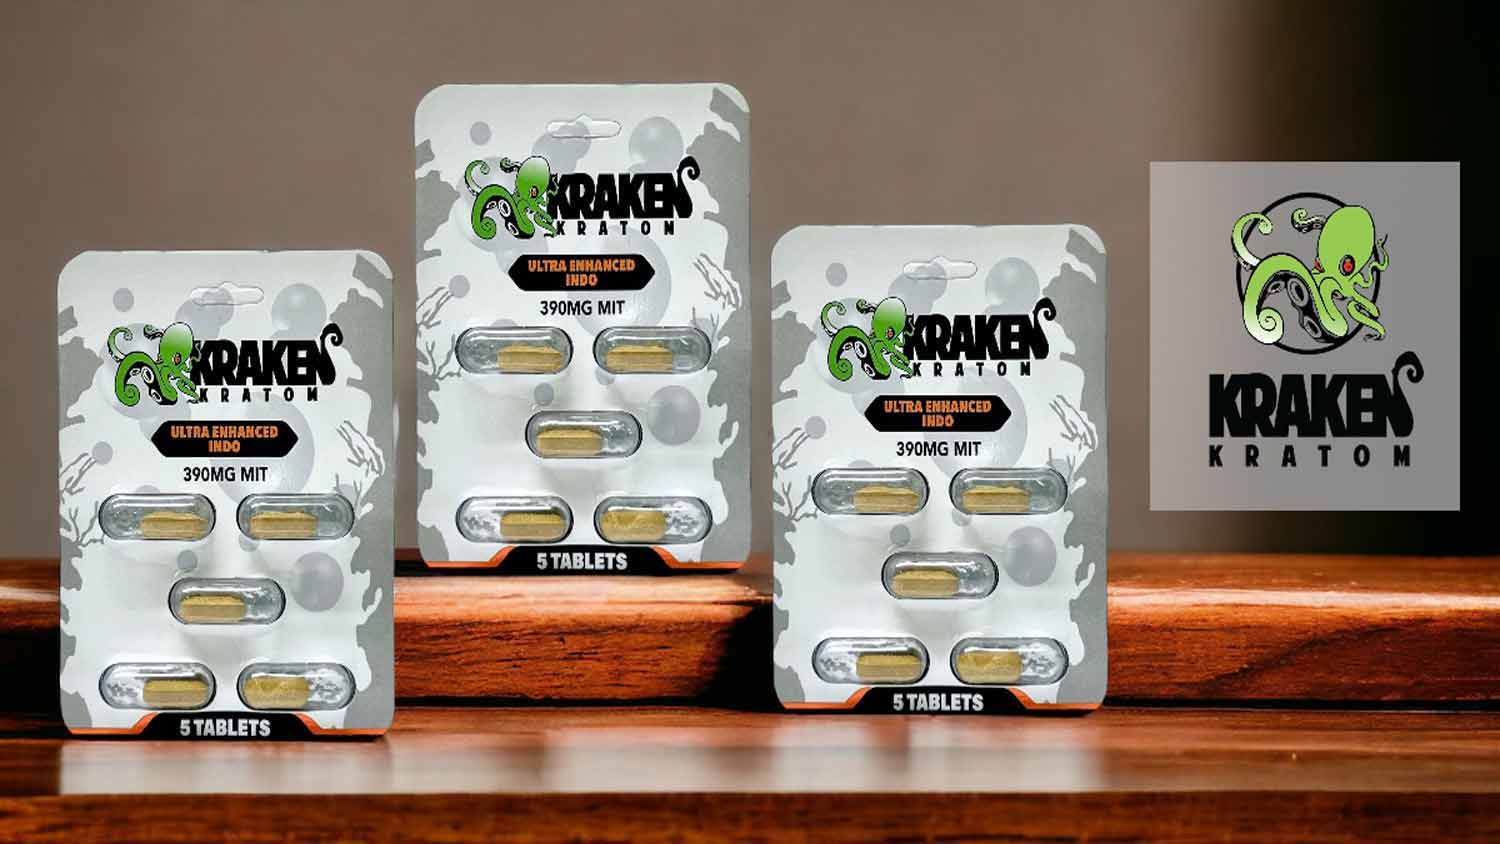 Kraken Kratom Chewable Tablets Ultra Enhanced Indo Blister Pack 5ct 390mg